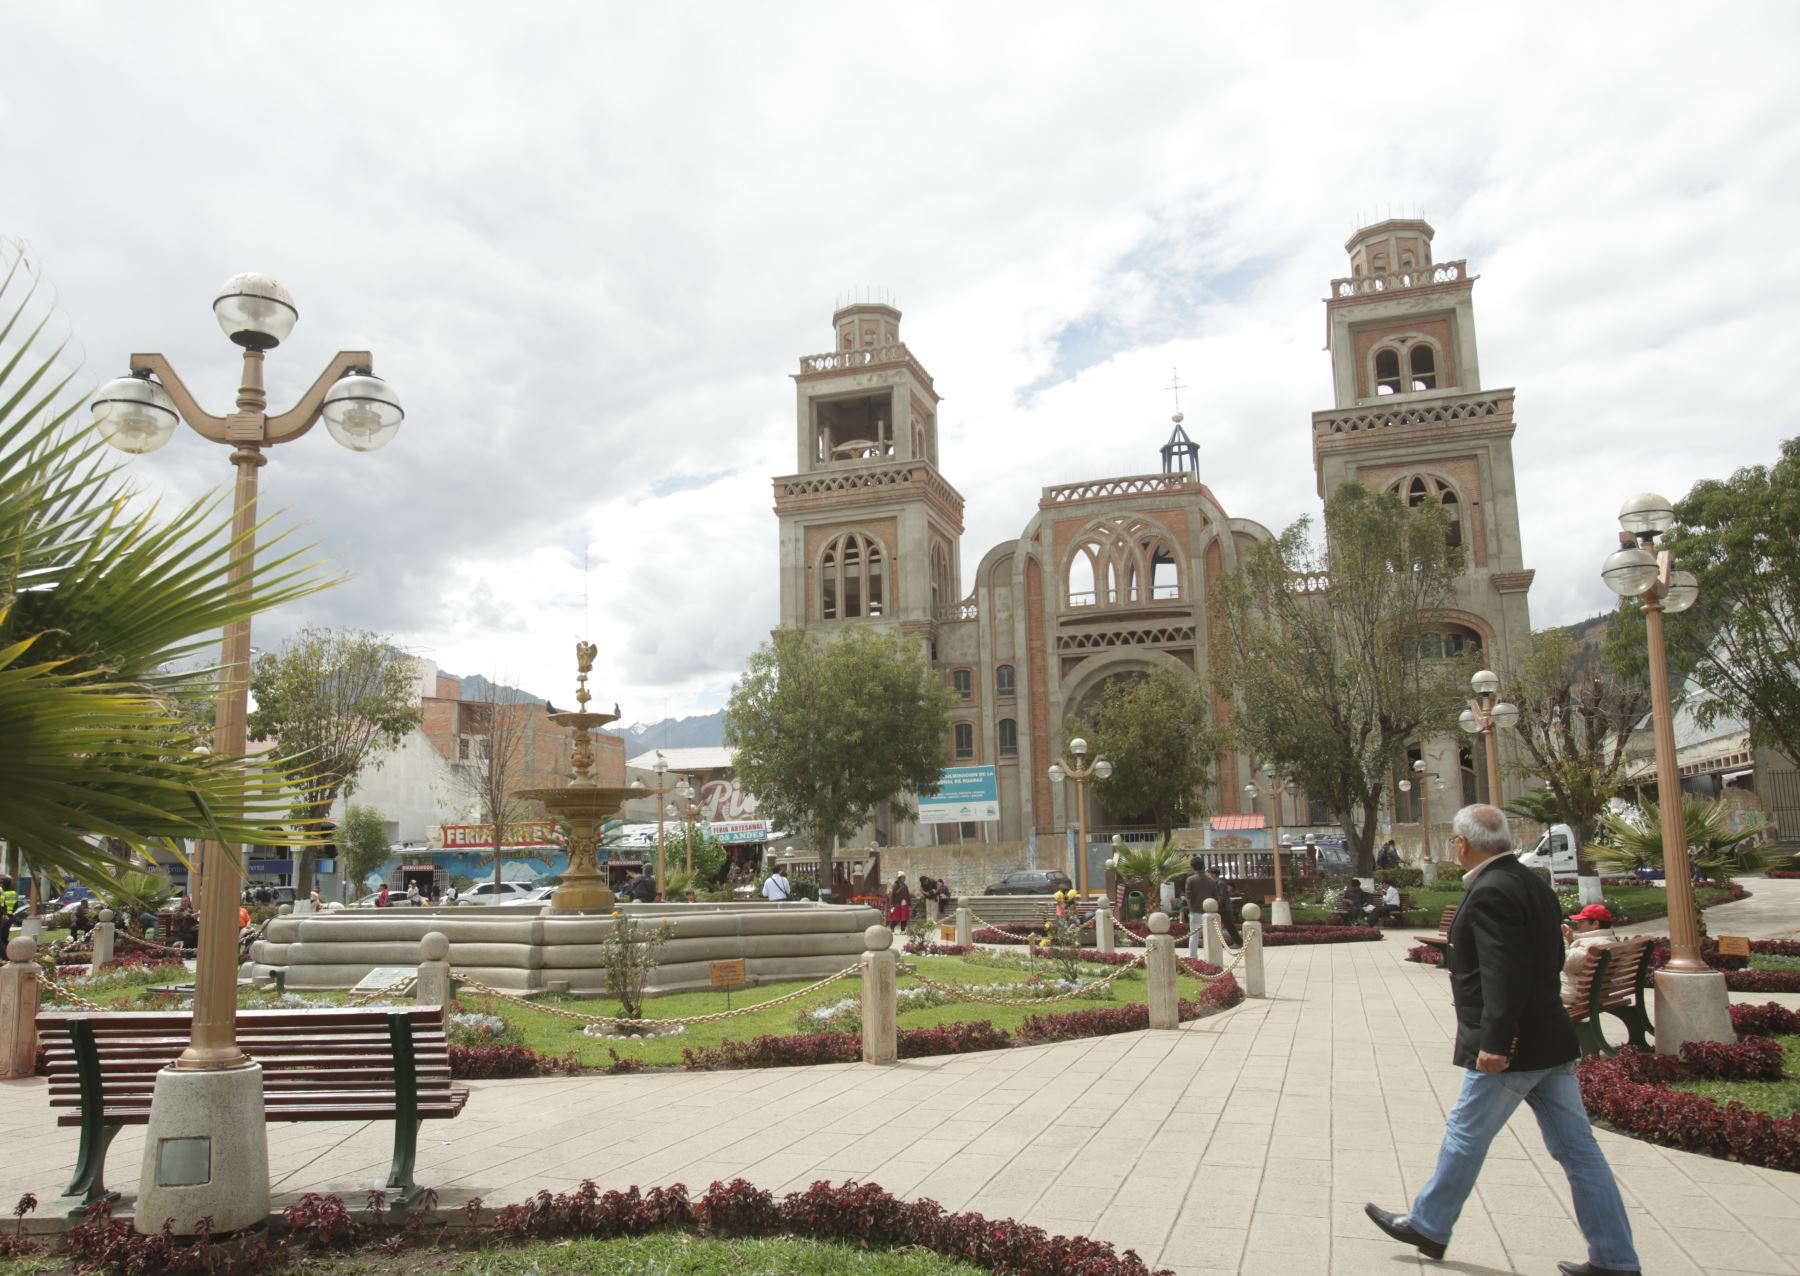 El Gobierno Regional de Áncash ha organizado un simulacro se sismo seguido de aluvión en Huaraz. ANDINA/archivo